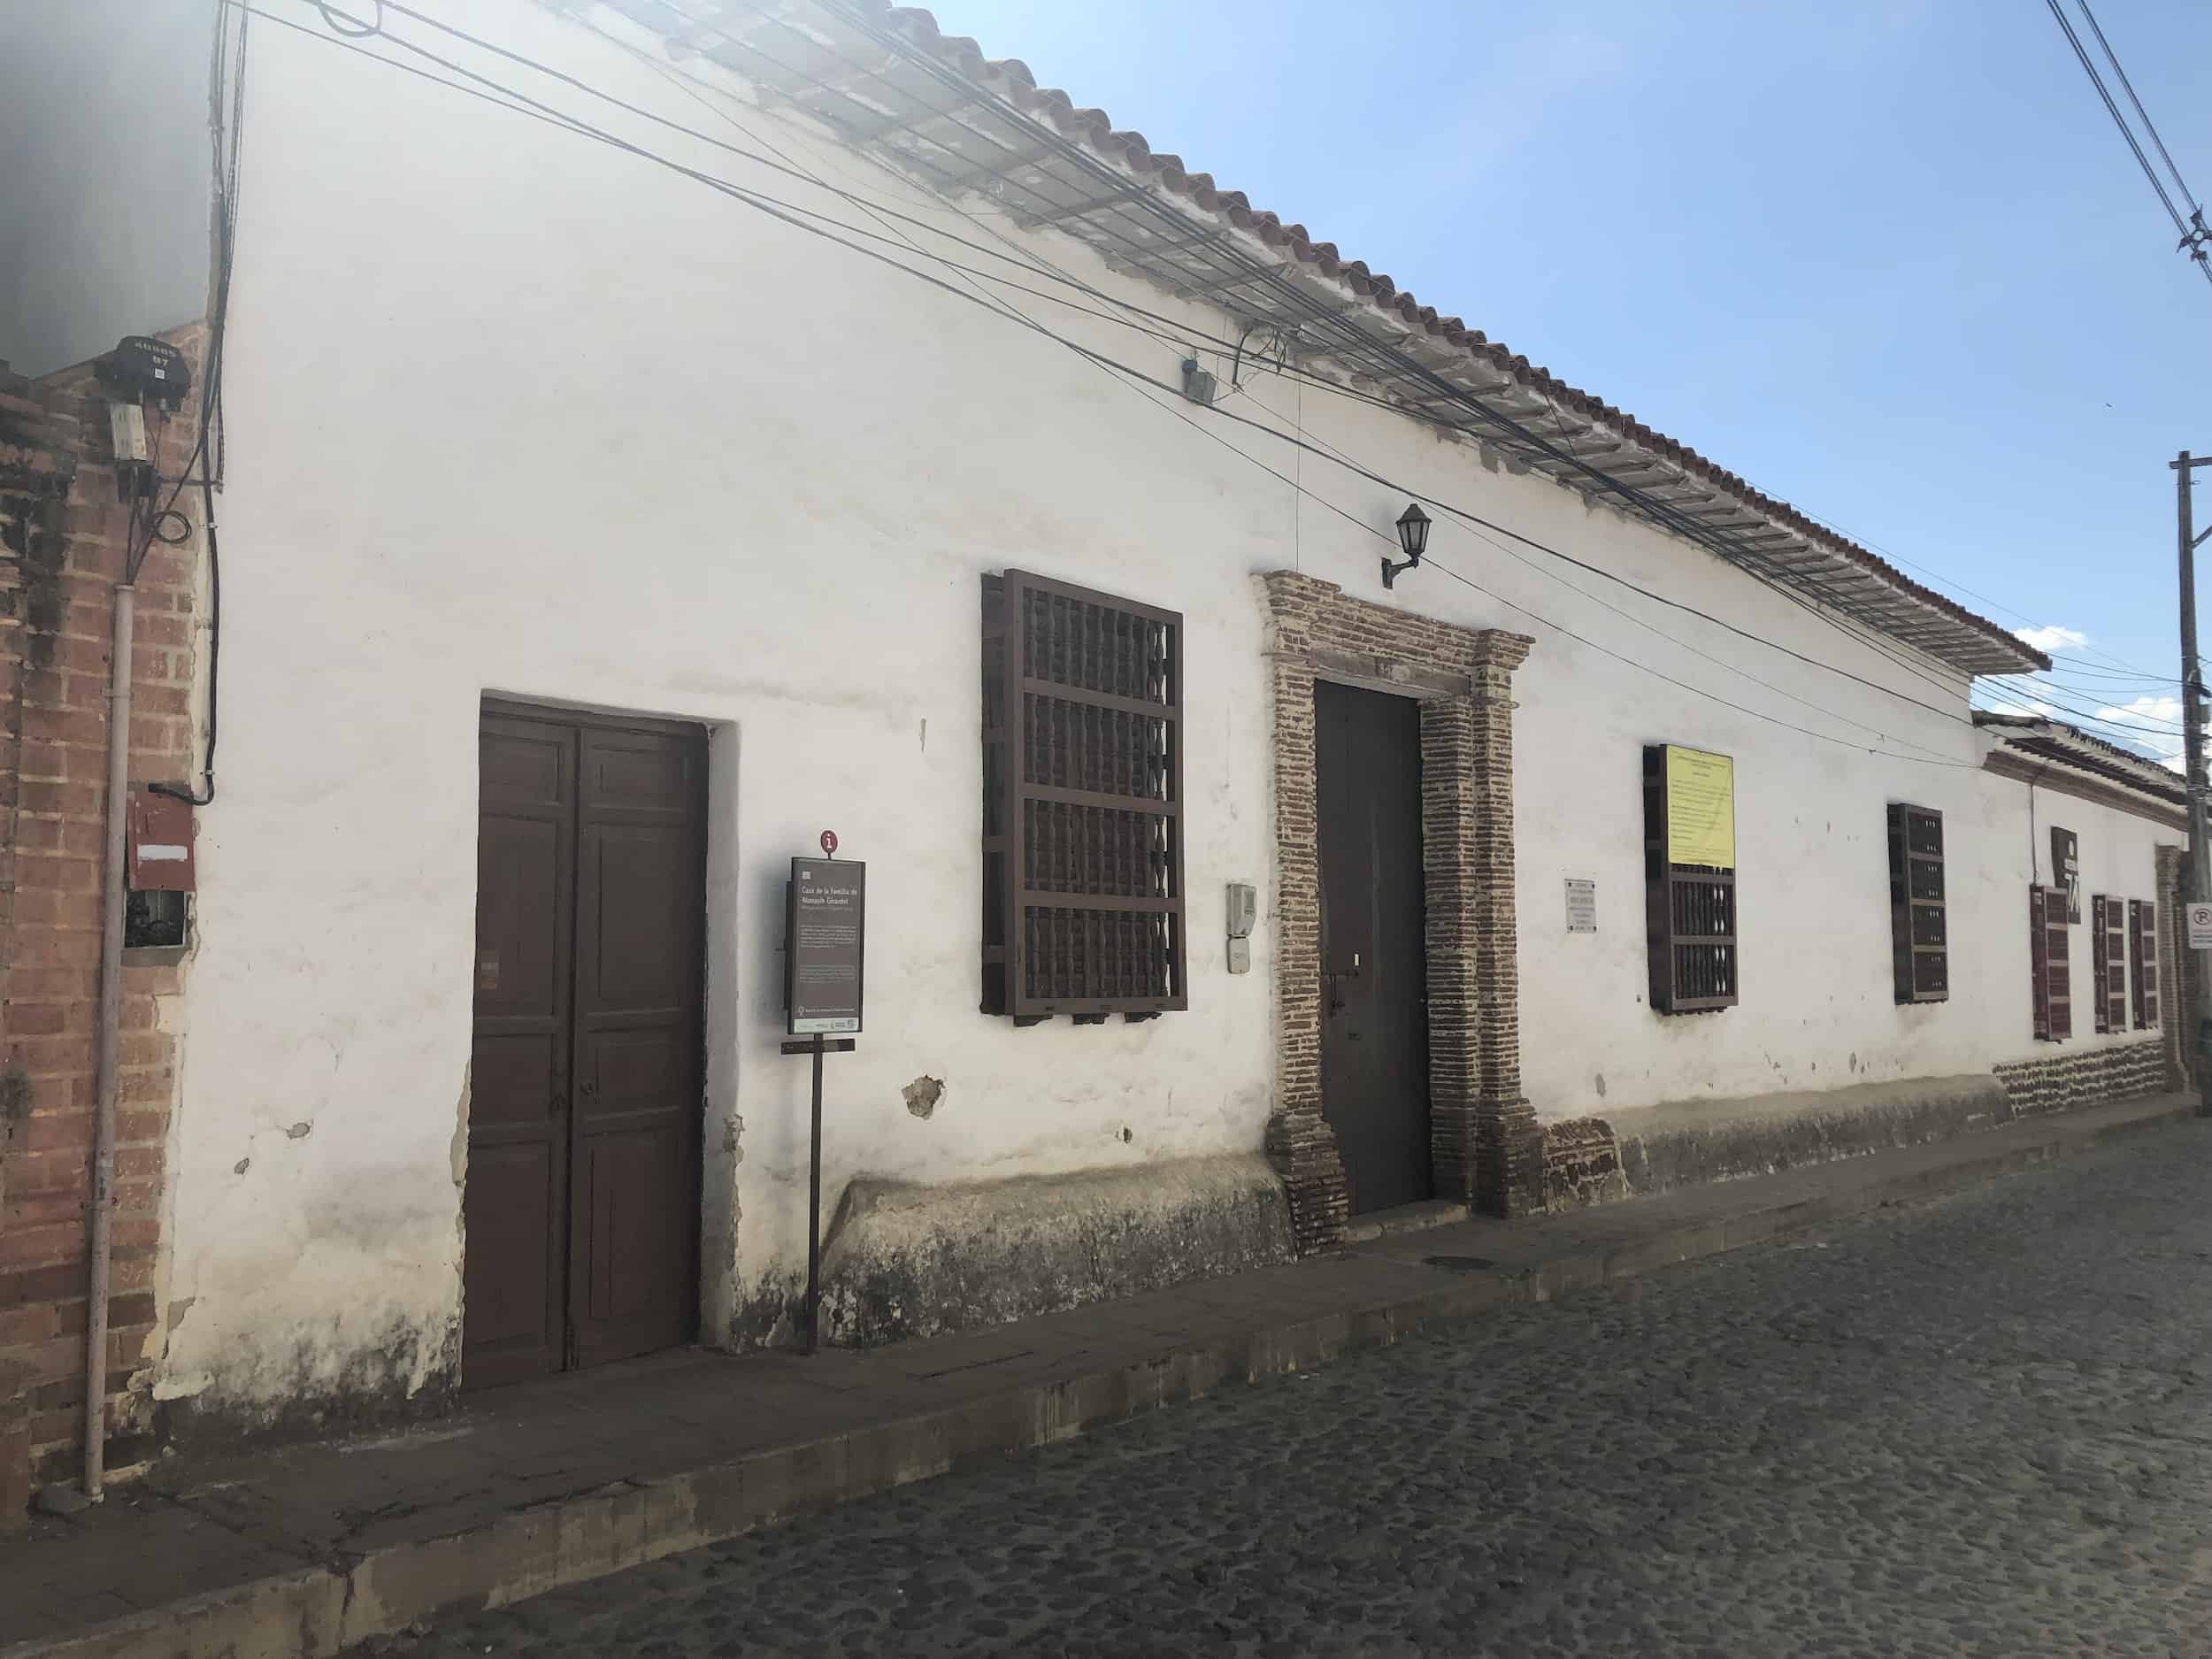 Girardot House in Santa Fe de Antioquia, Colombia